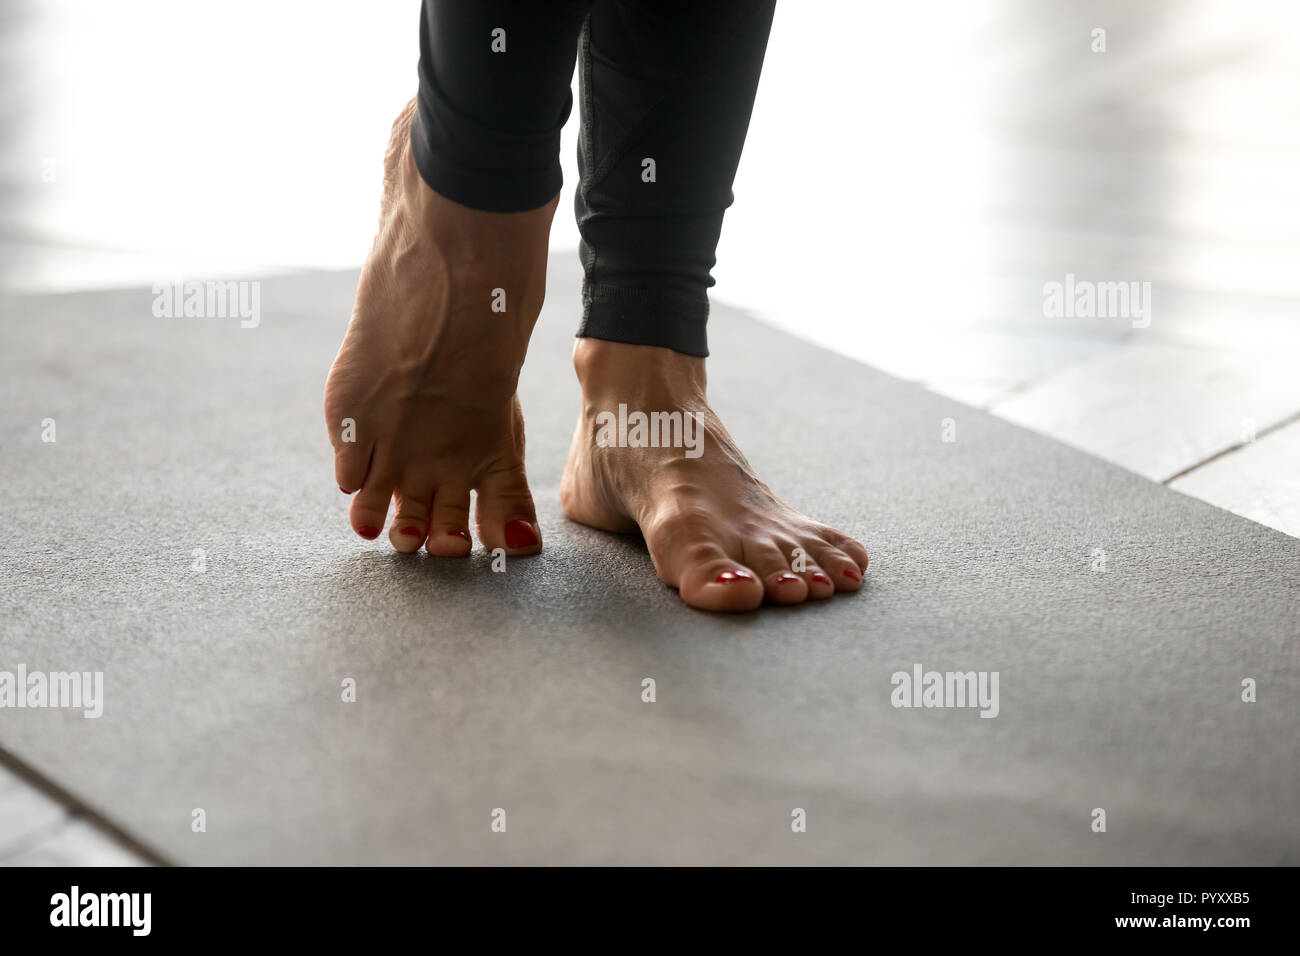 Sportliche Frau Üben Yoga, Übungen für stärkere Füße Stockfoto